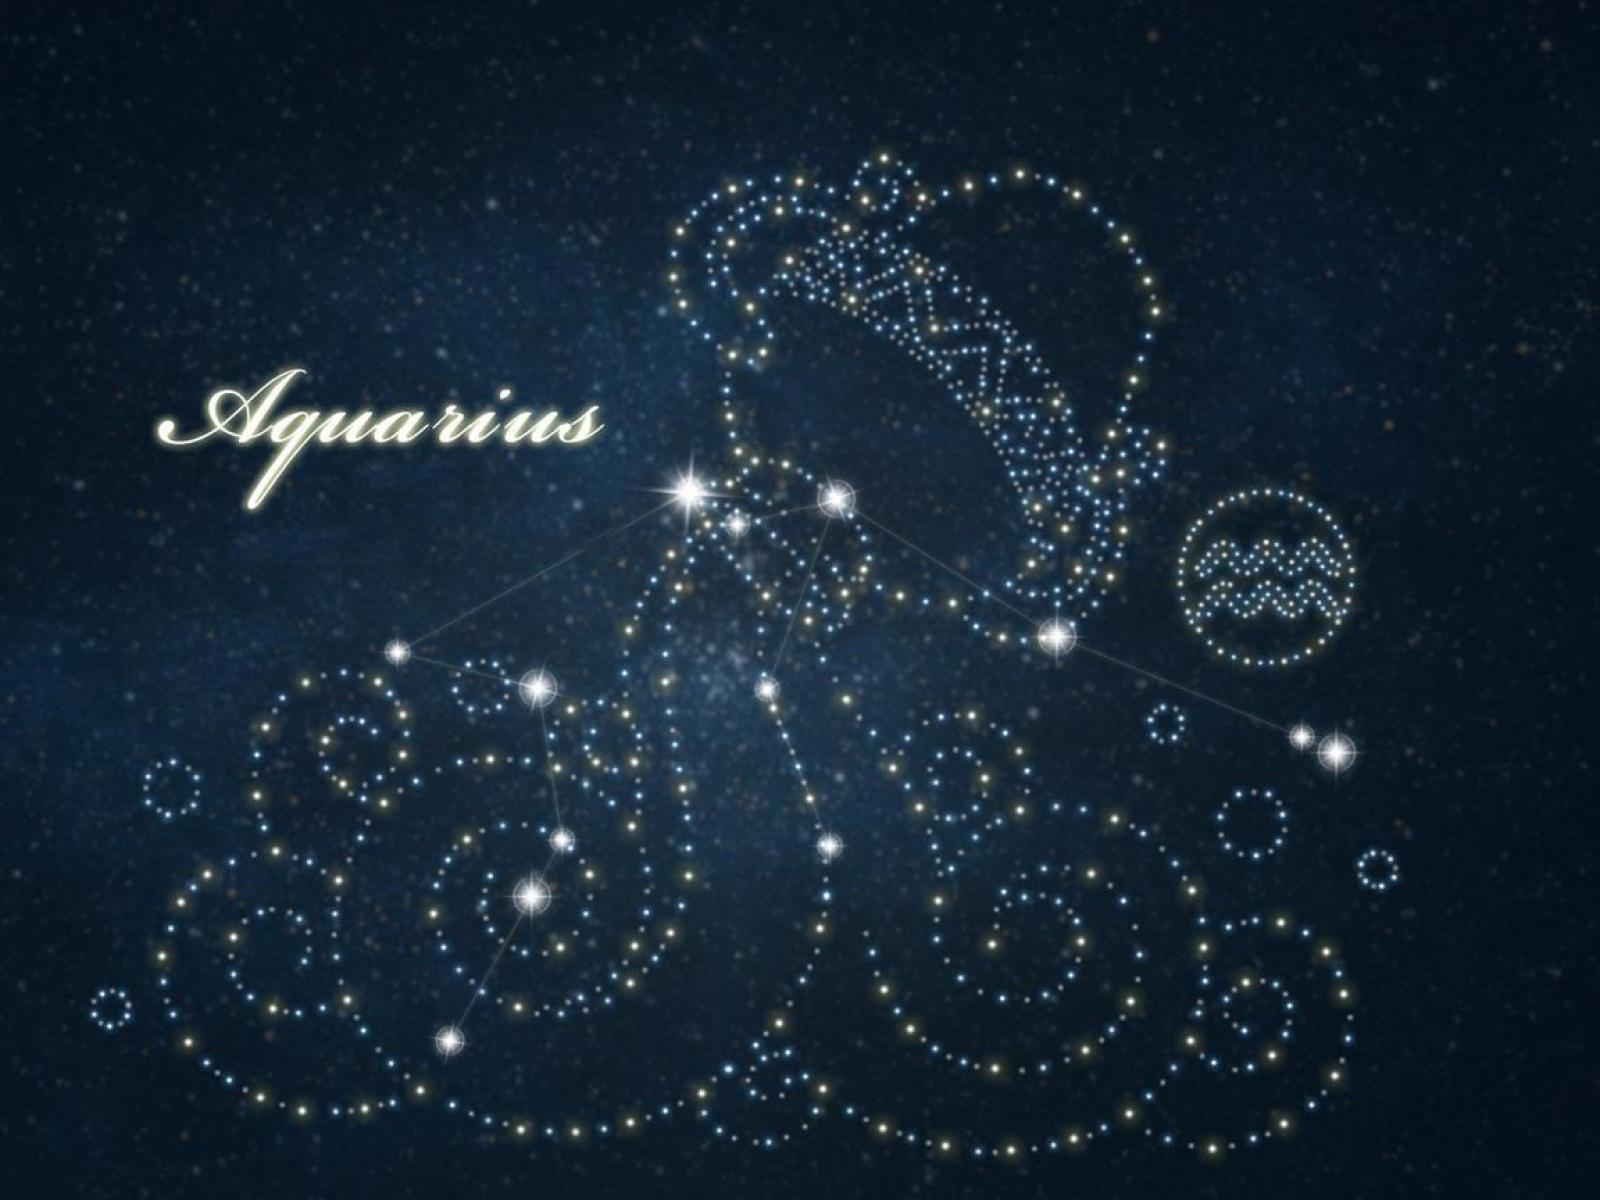 100+] Aquarius Zodiac Wallpapers | Wallpapers.com